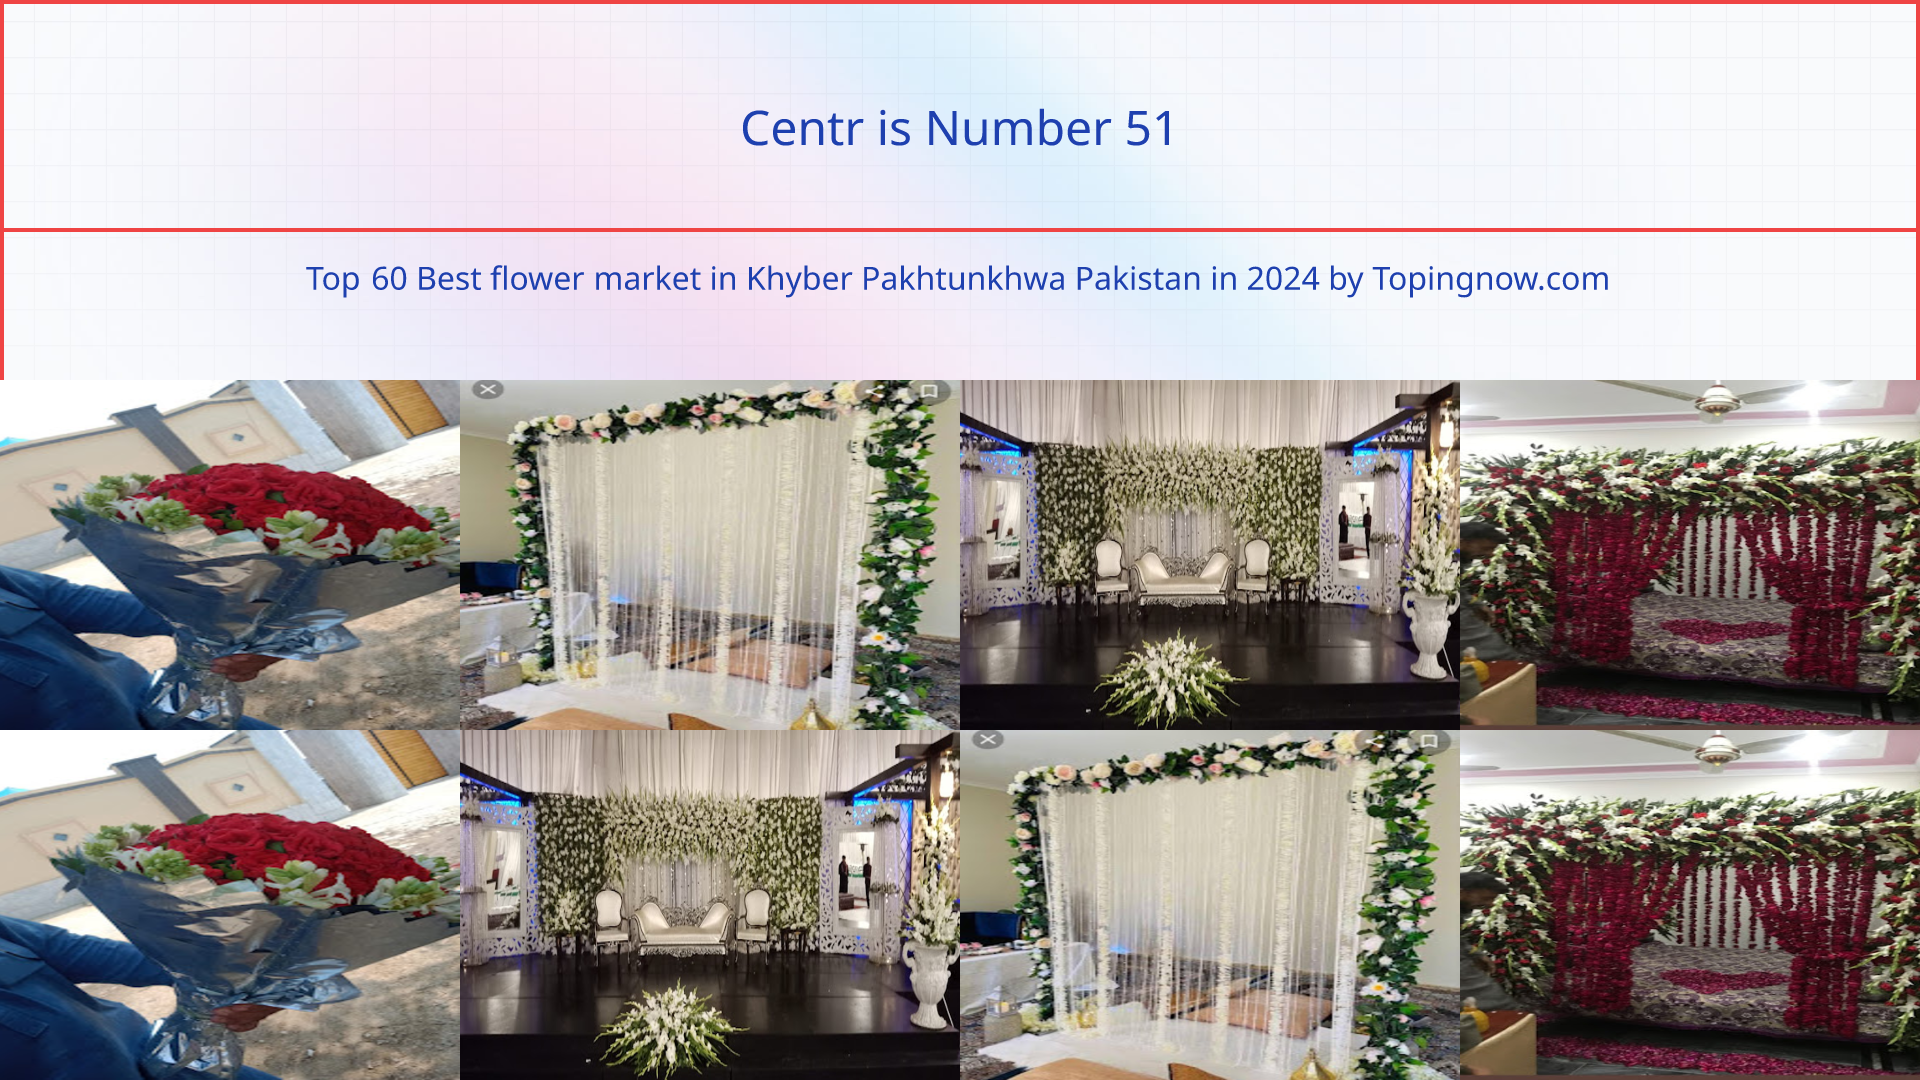 Centr: Top 60 Best flower market in Khyber Pakhtunkhwa Pakistan in 2024